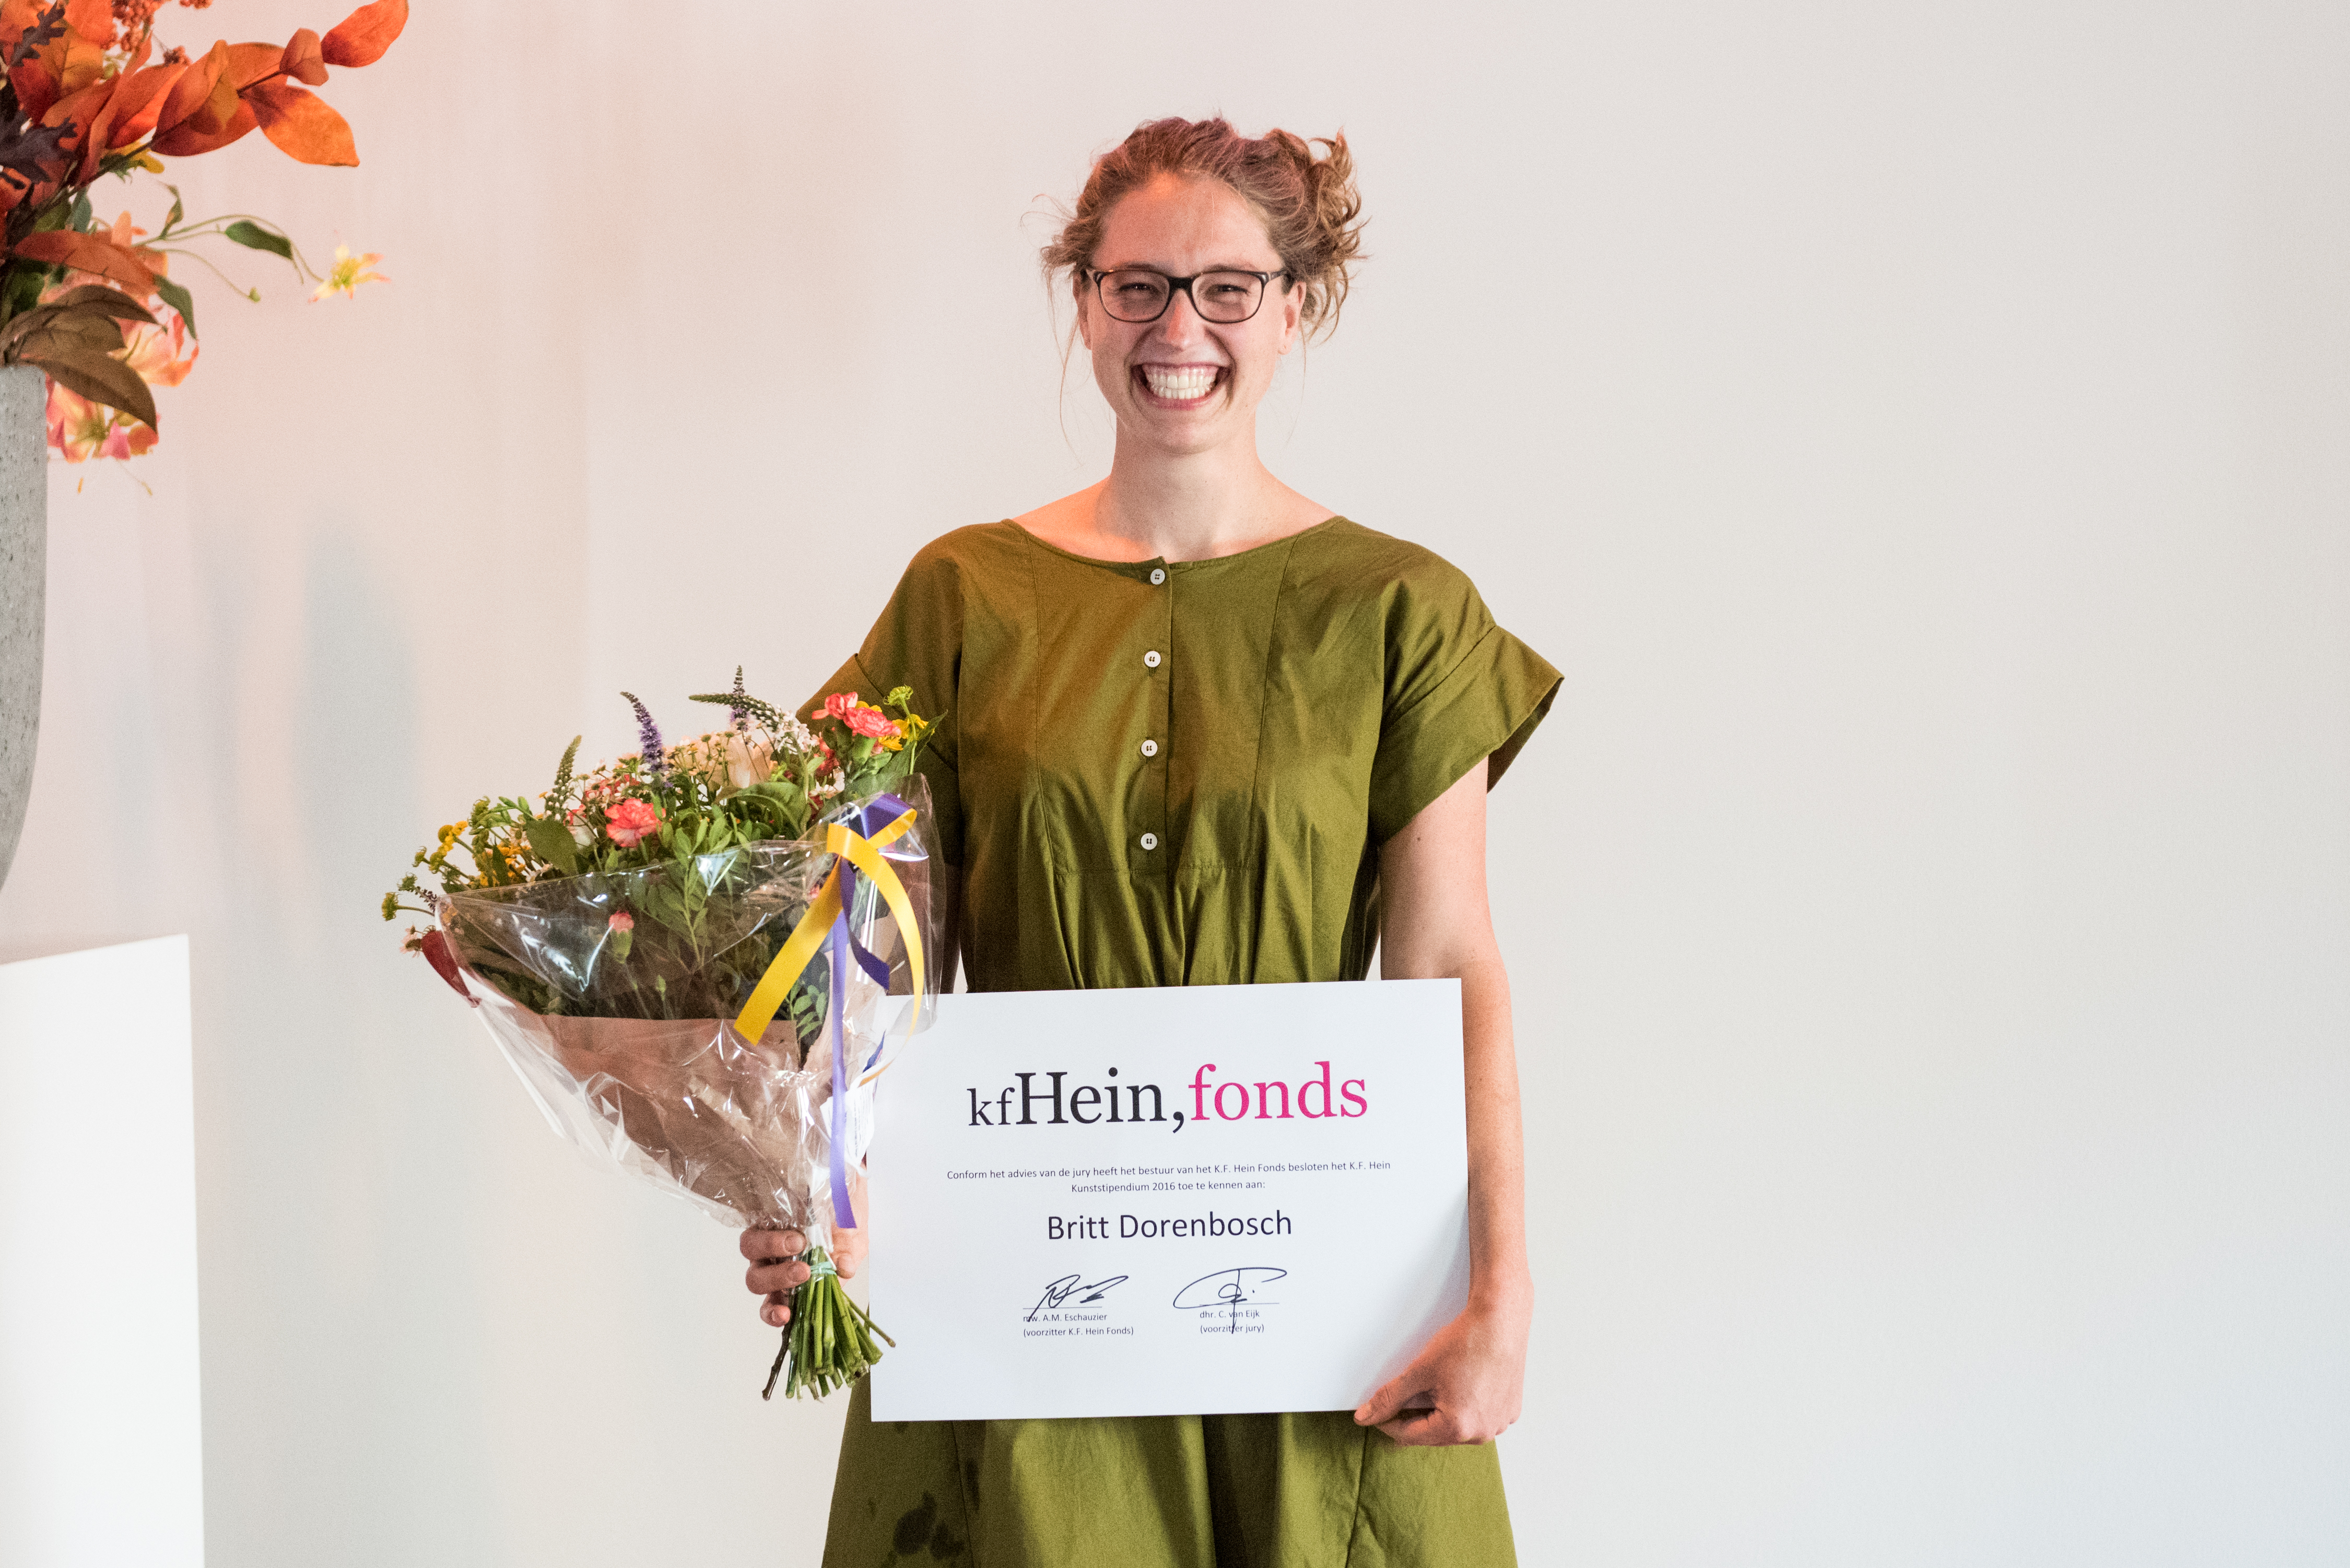 winnaar Britt Dorenbosch poseert met oorkonde en bloemen